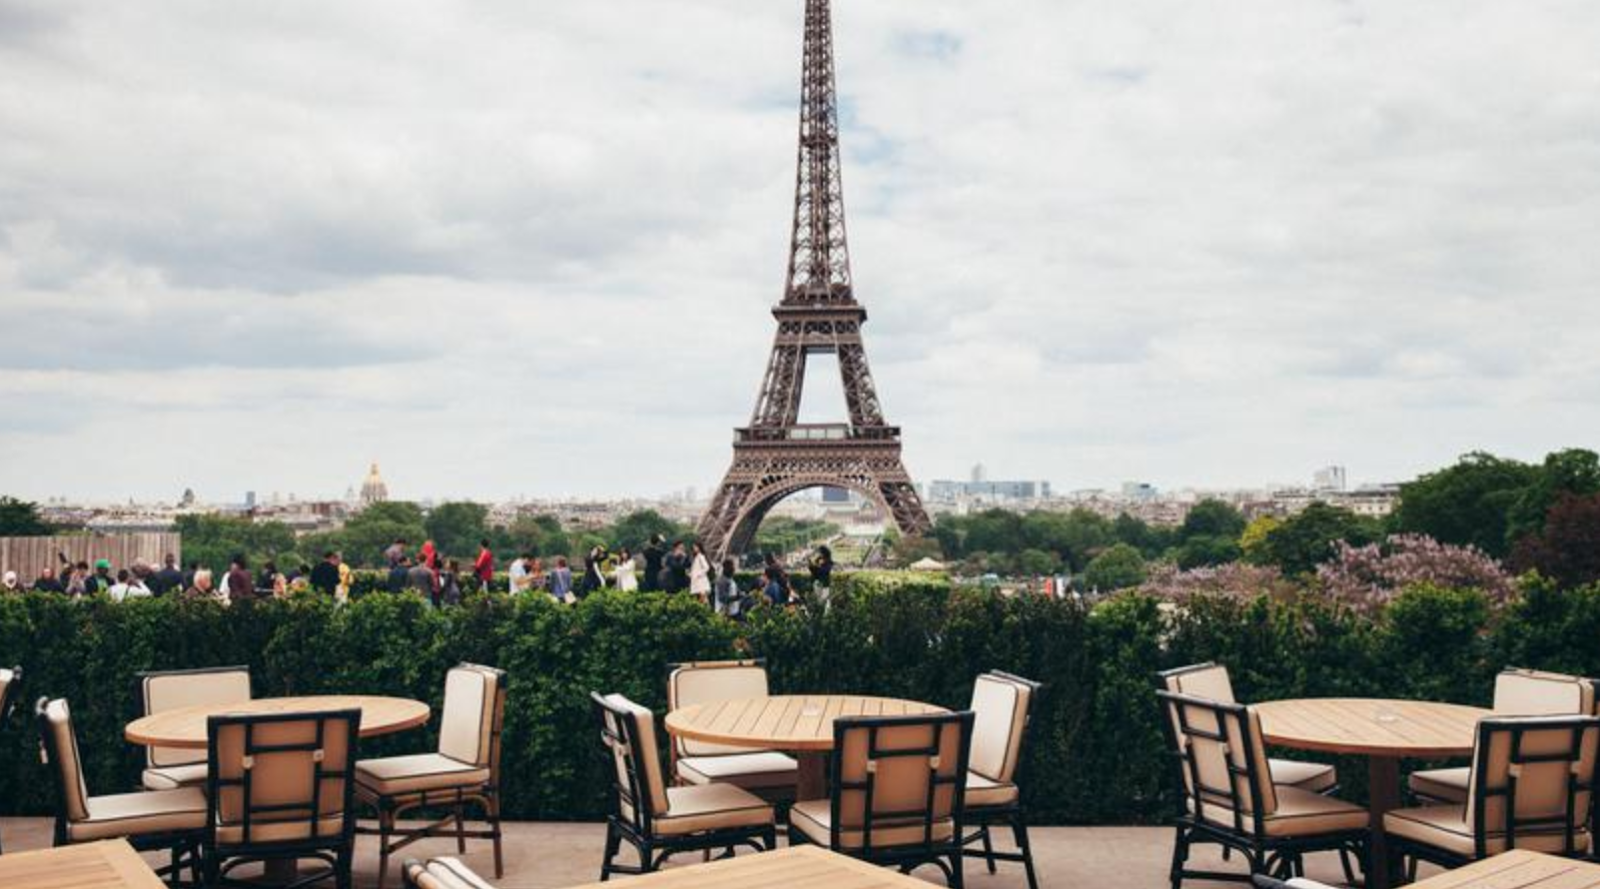 Вид на париж с эйфелевой башни. Париж кафе Эйфелева башня. Ресторан в Париже с видом на Эйфелеву башню. Улицы Парижа с видом на Эйфелеву башню. Вид на Эйфелеву башню с Монмартра.